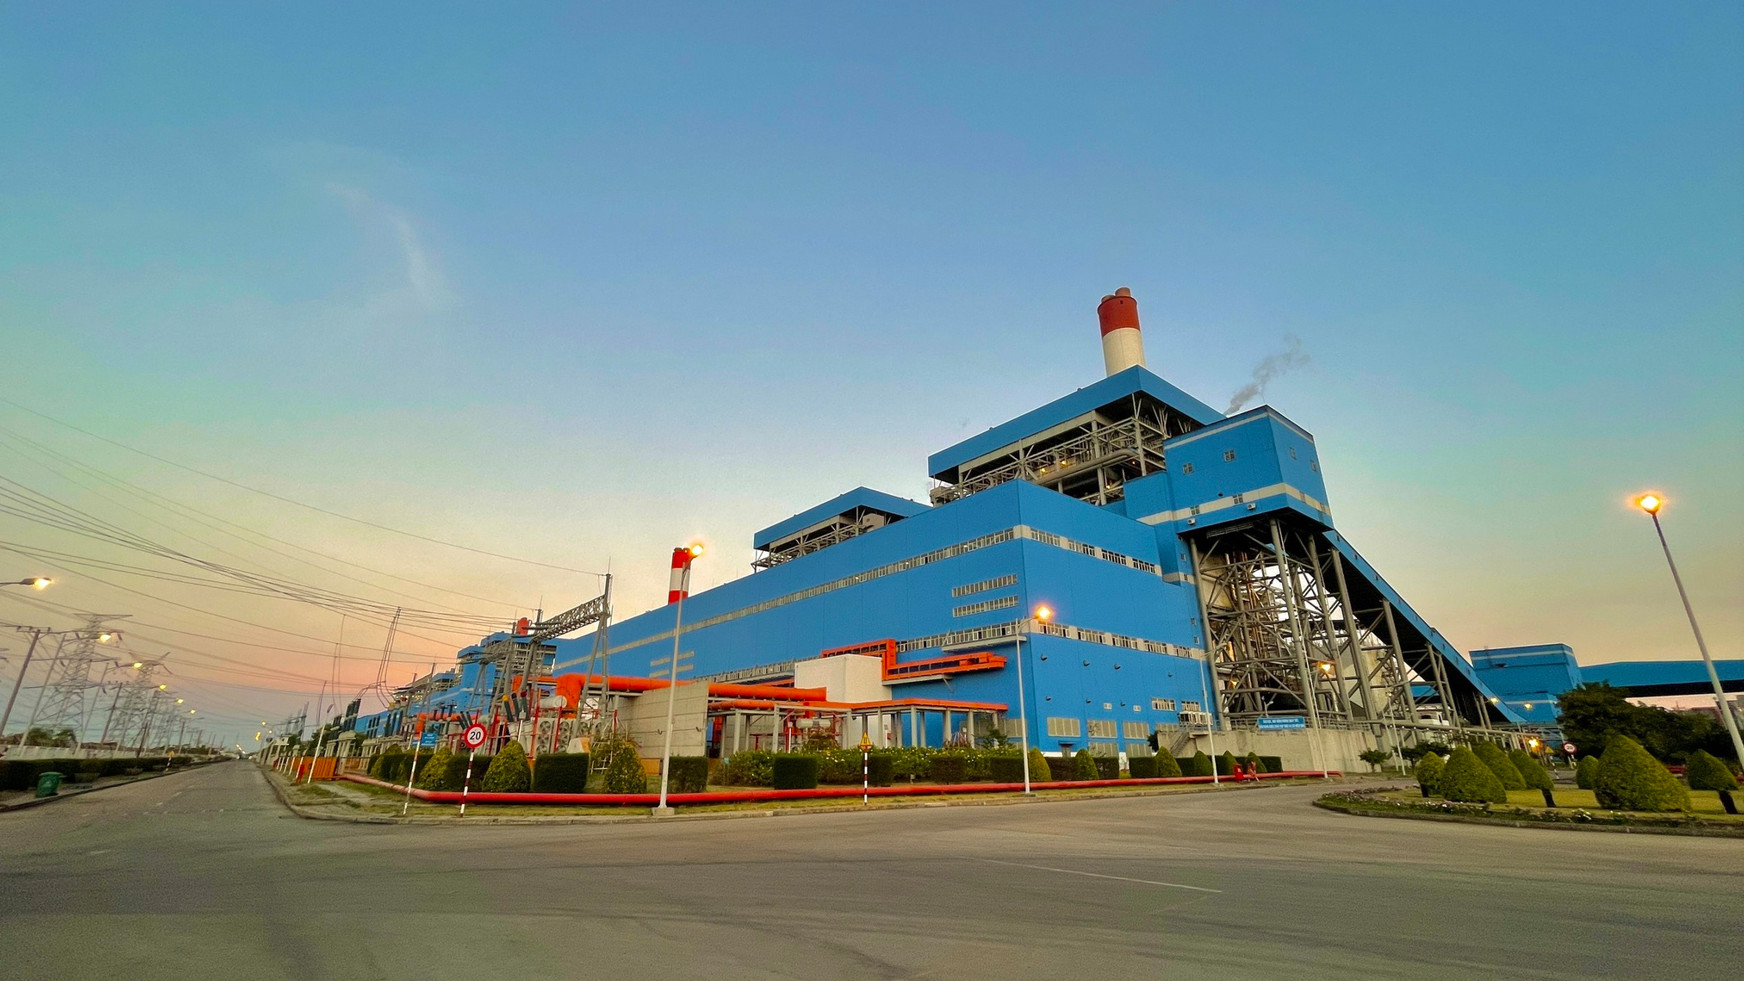 Công ty Nhiệt điện Duyên Hải đang nỗ lực duy trì ổn định hoạt động sản xuất kinh doanh, thích ứng linh hoạt.